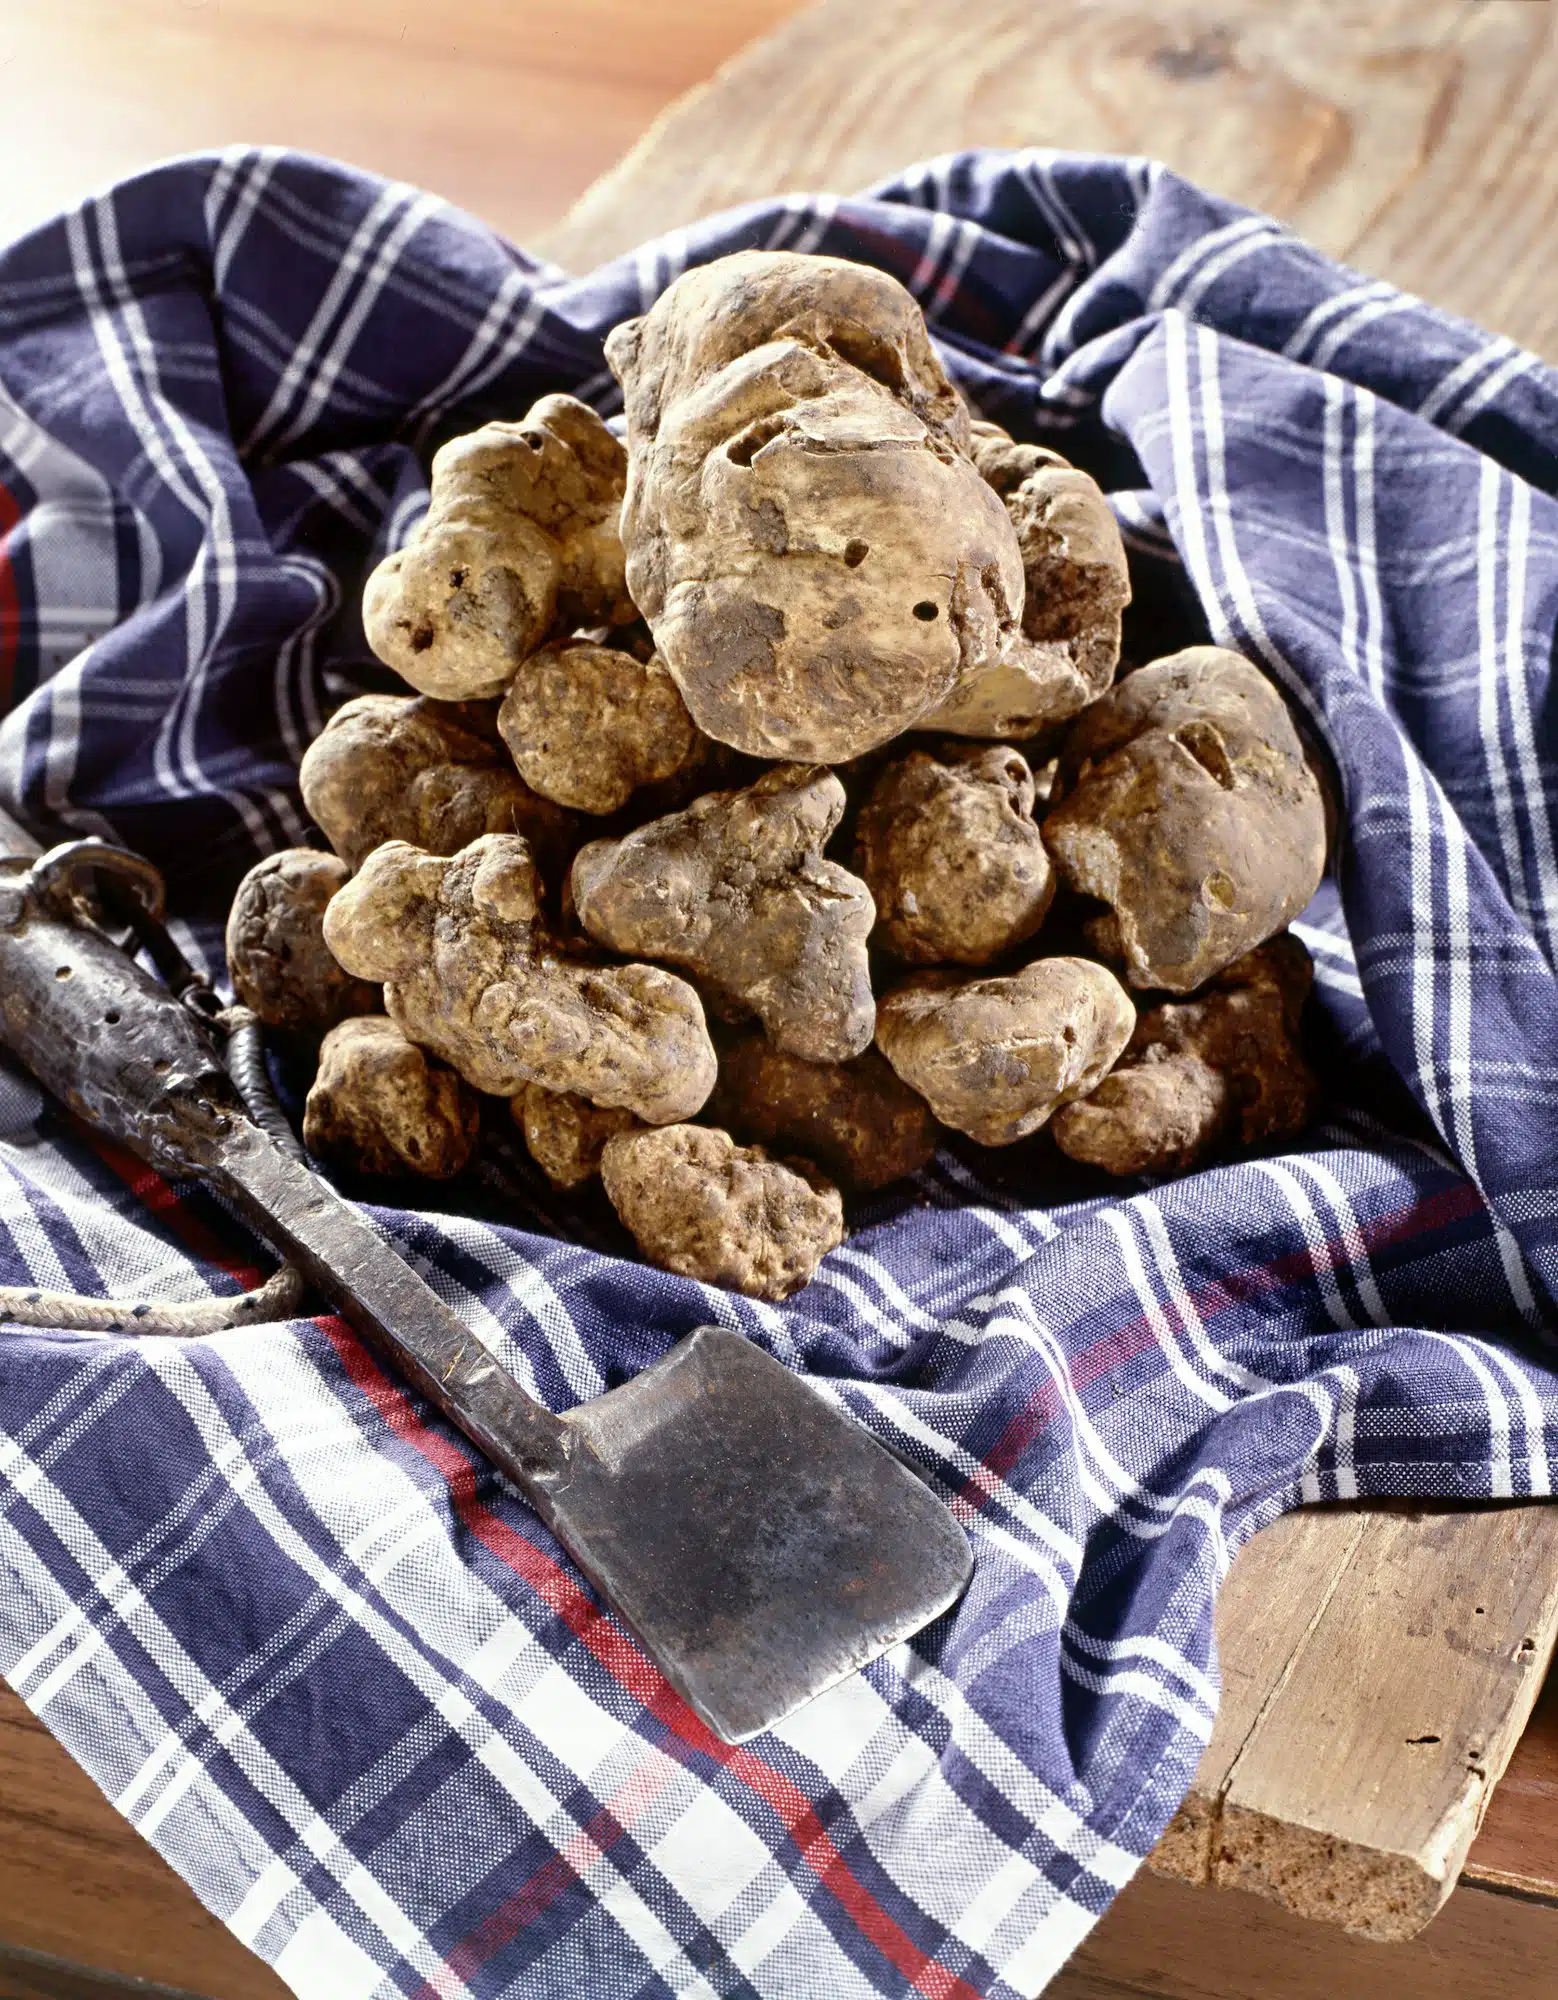 Comment bien cuire la truffe blanche ?